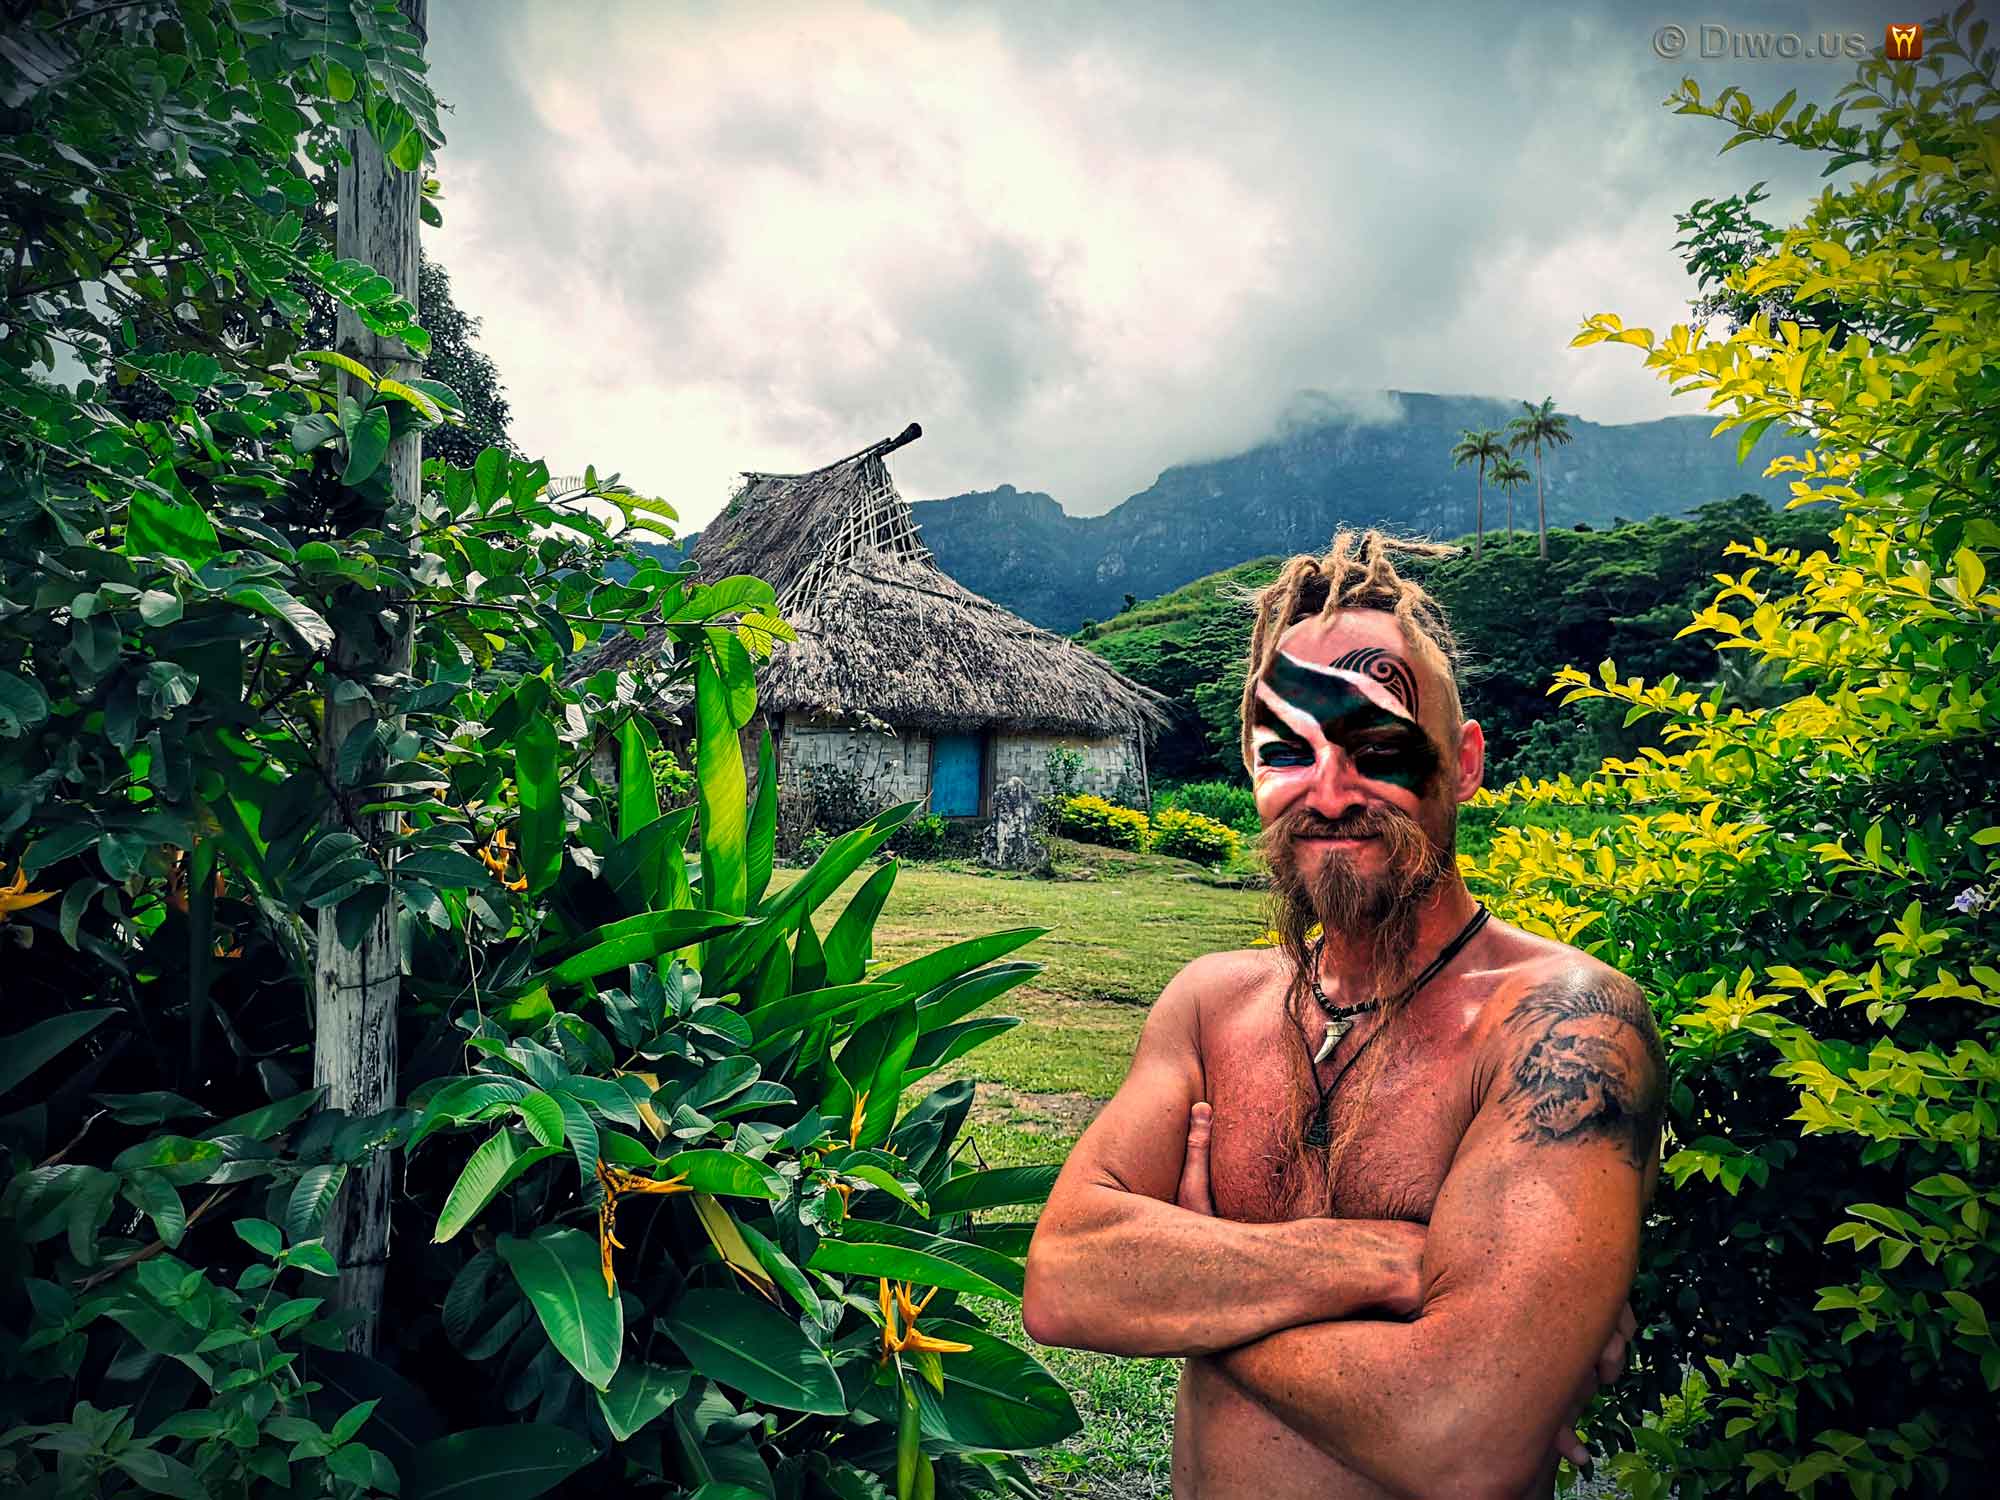 Diwous - Šaman kanibalů, 2020, savage, divoch, shaman, cannibal, vesnice, village, chatrč, cottage, válečné malování, face paint, džungle, jungle, deštný prales, rain forest, hory, vulkán, mountains, volcano, Fidži, Fiji, Mikronésie, Micronesia